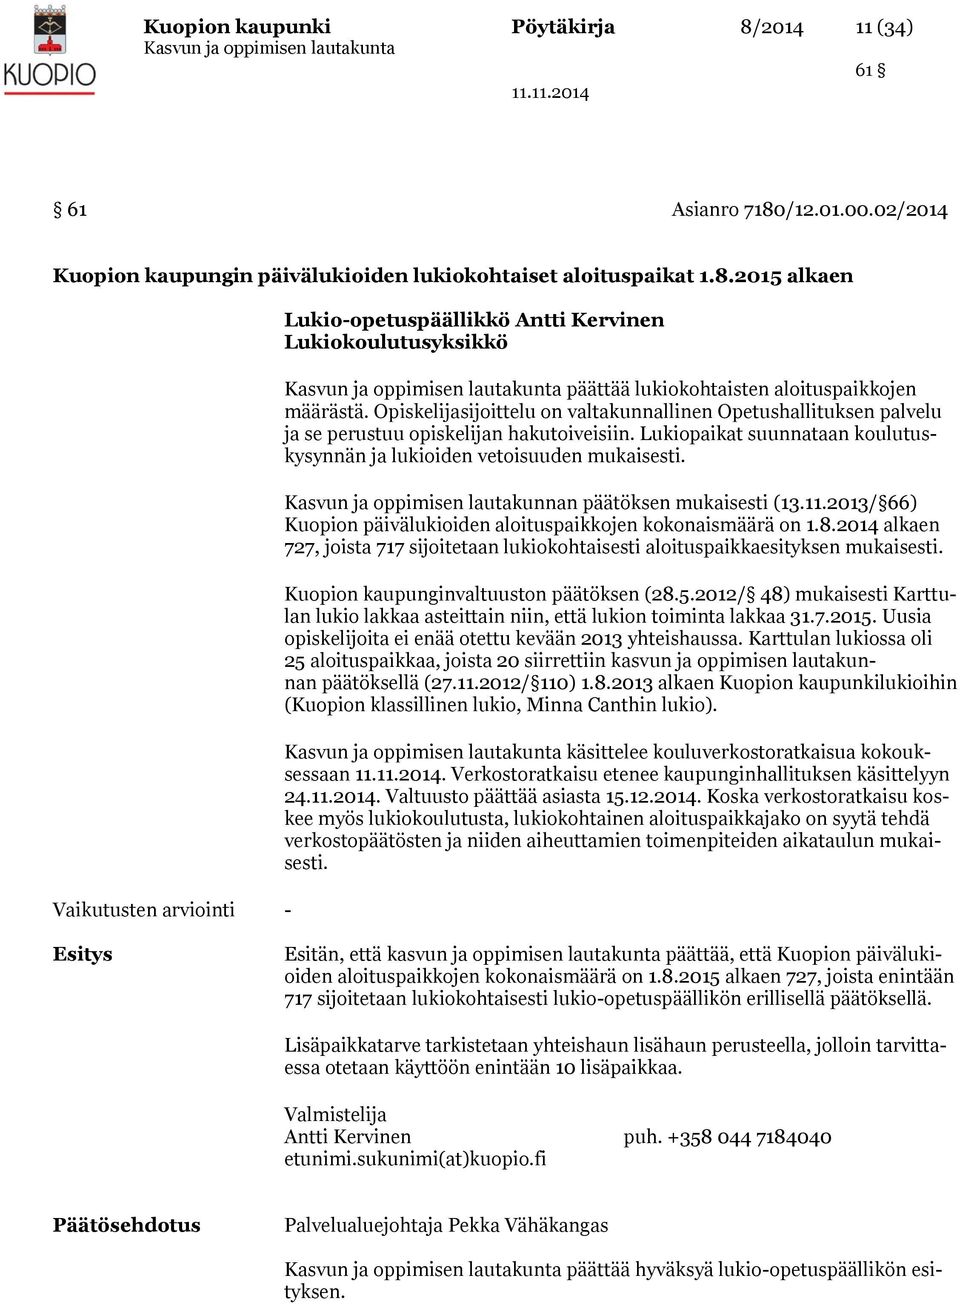 Kasvun ja oppimisen lautakunnan päätöksen mukaisesti (13.11.2013/ 66) Kuopion päivälukioiden aloituspaikkojen kokonaismäärä on 1.8.